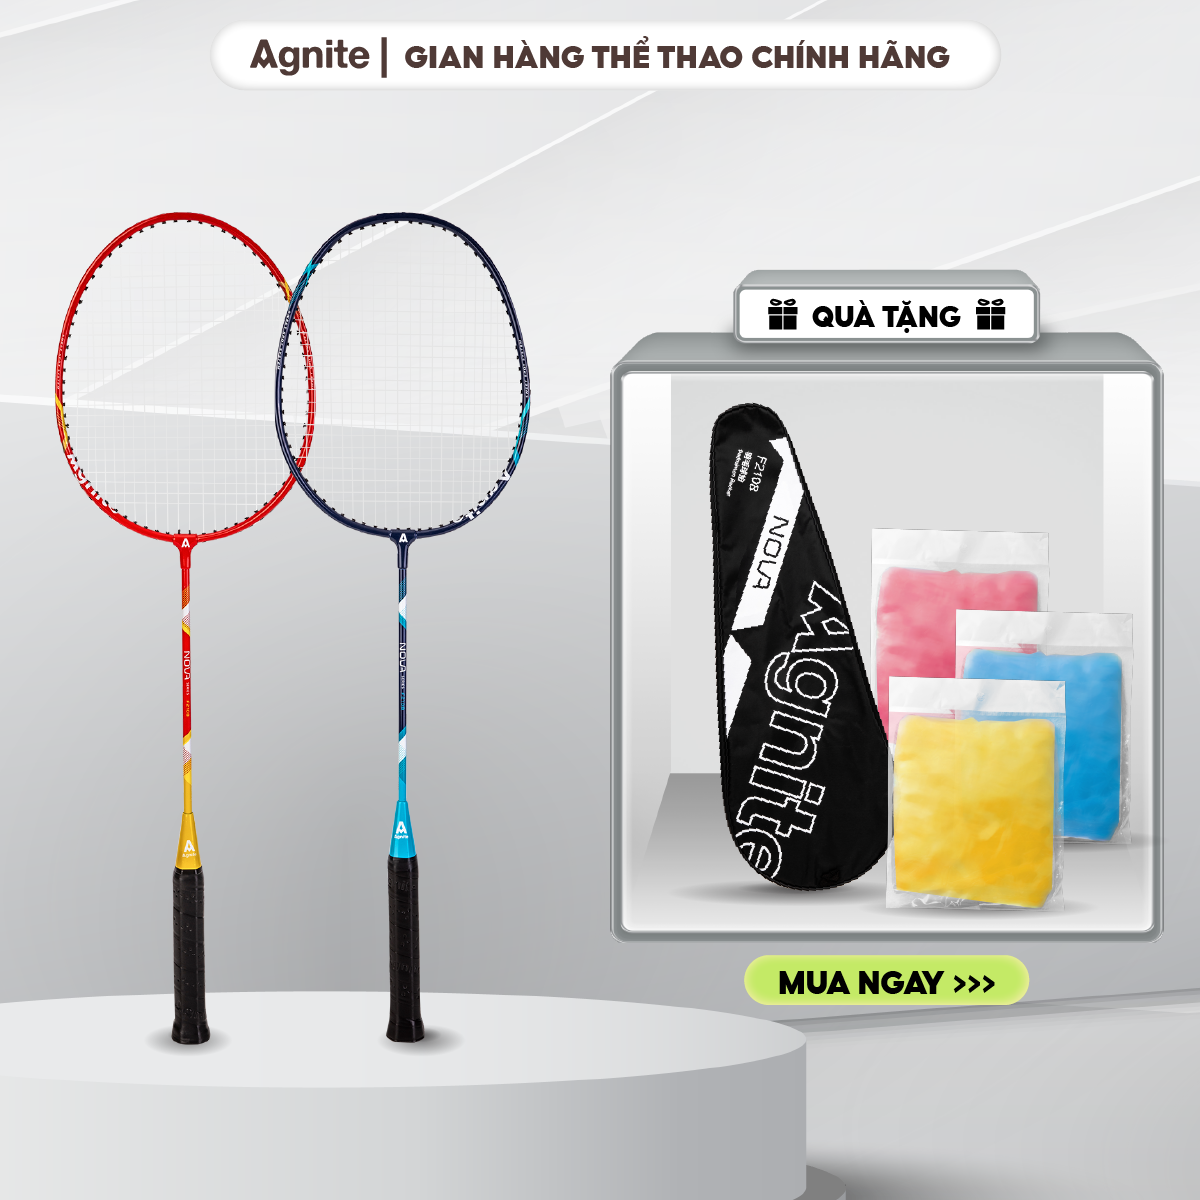 Bộ vợt cầu lông Agnite chính hãng cho người chơi thể thao chuyên nghiệp - F2108